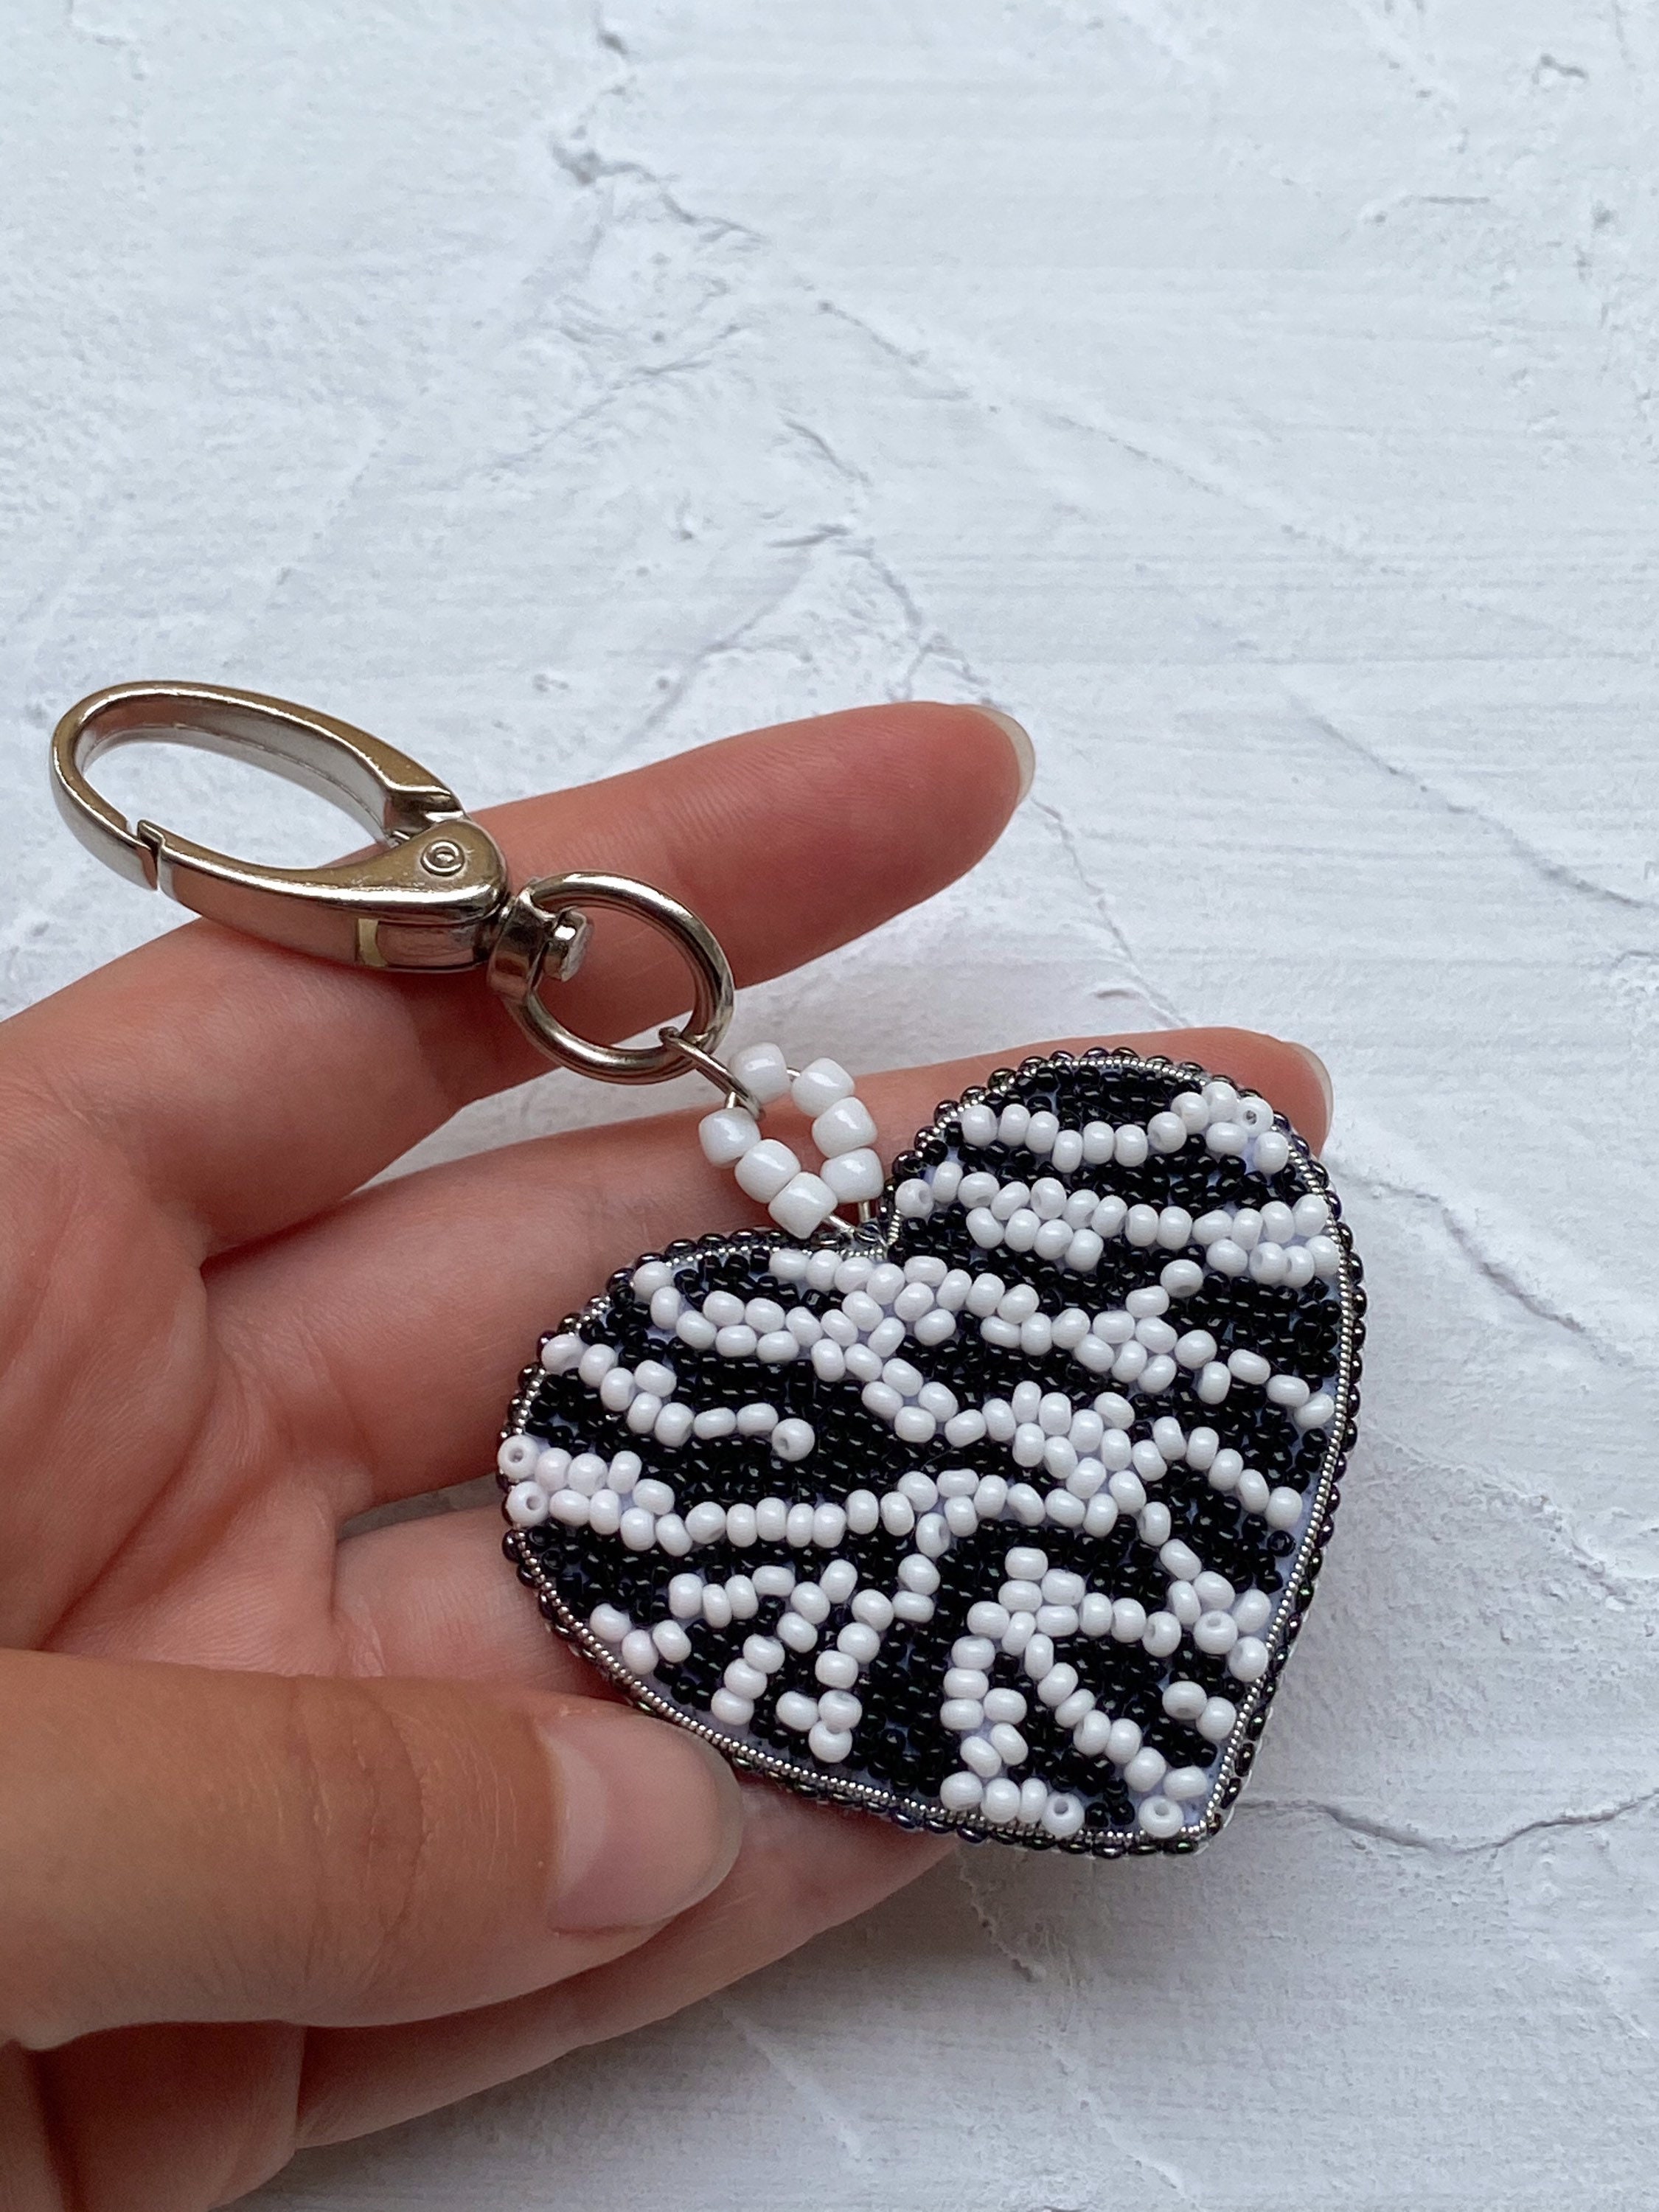 Kitty Cat Keychain / Earrings Black Cat Alt Halloween Perler Beads 